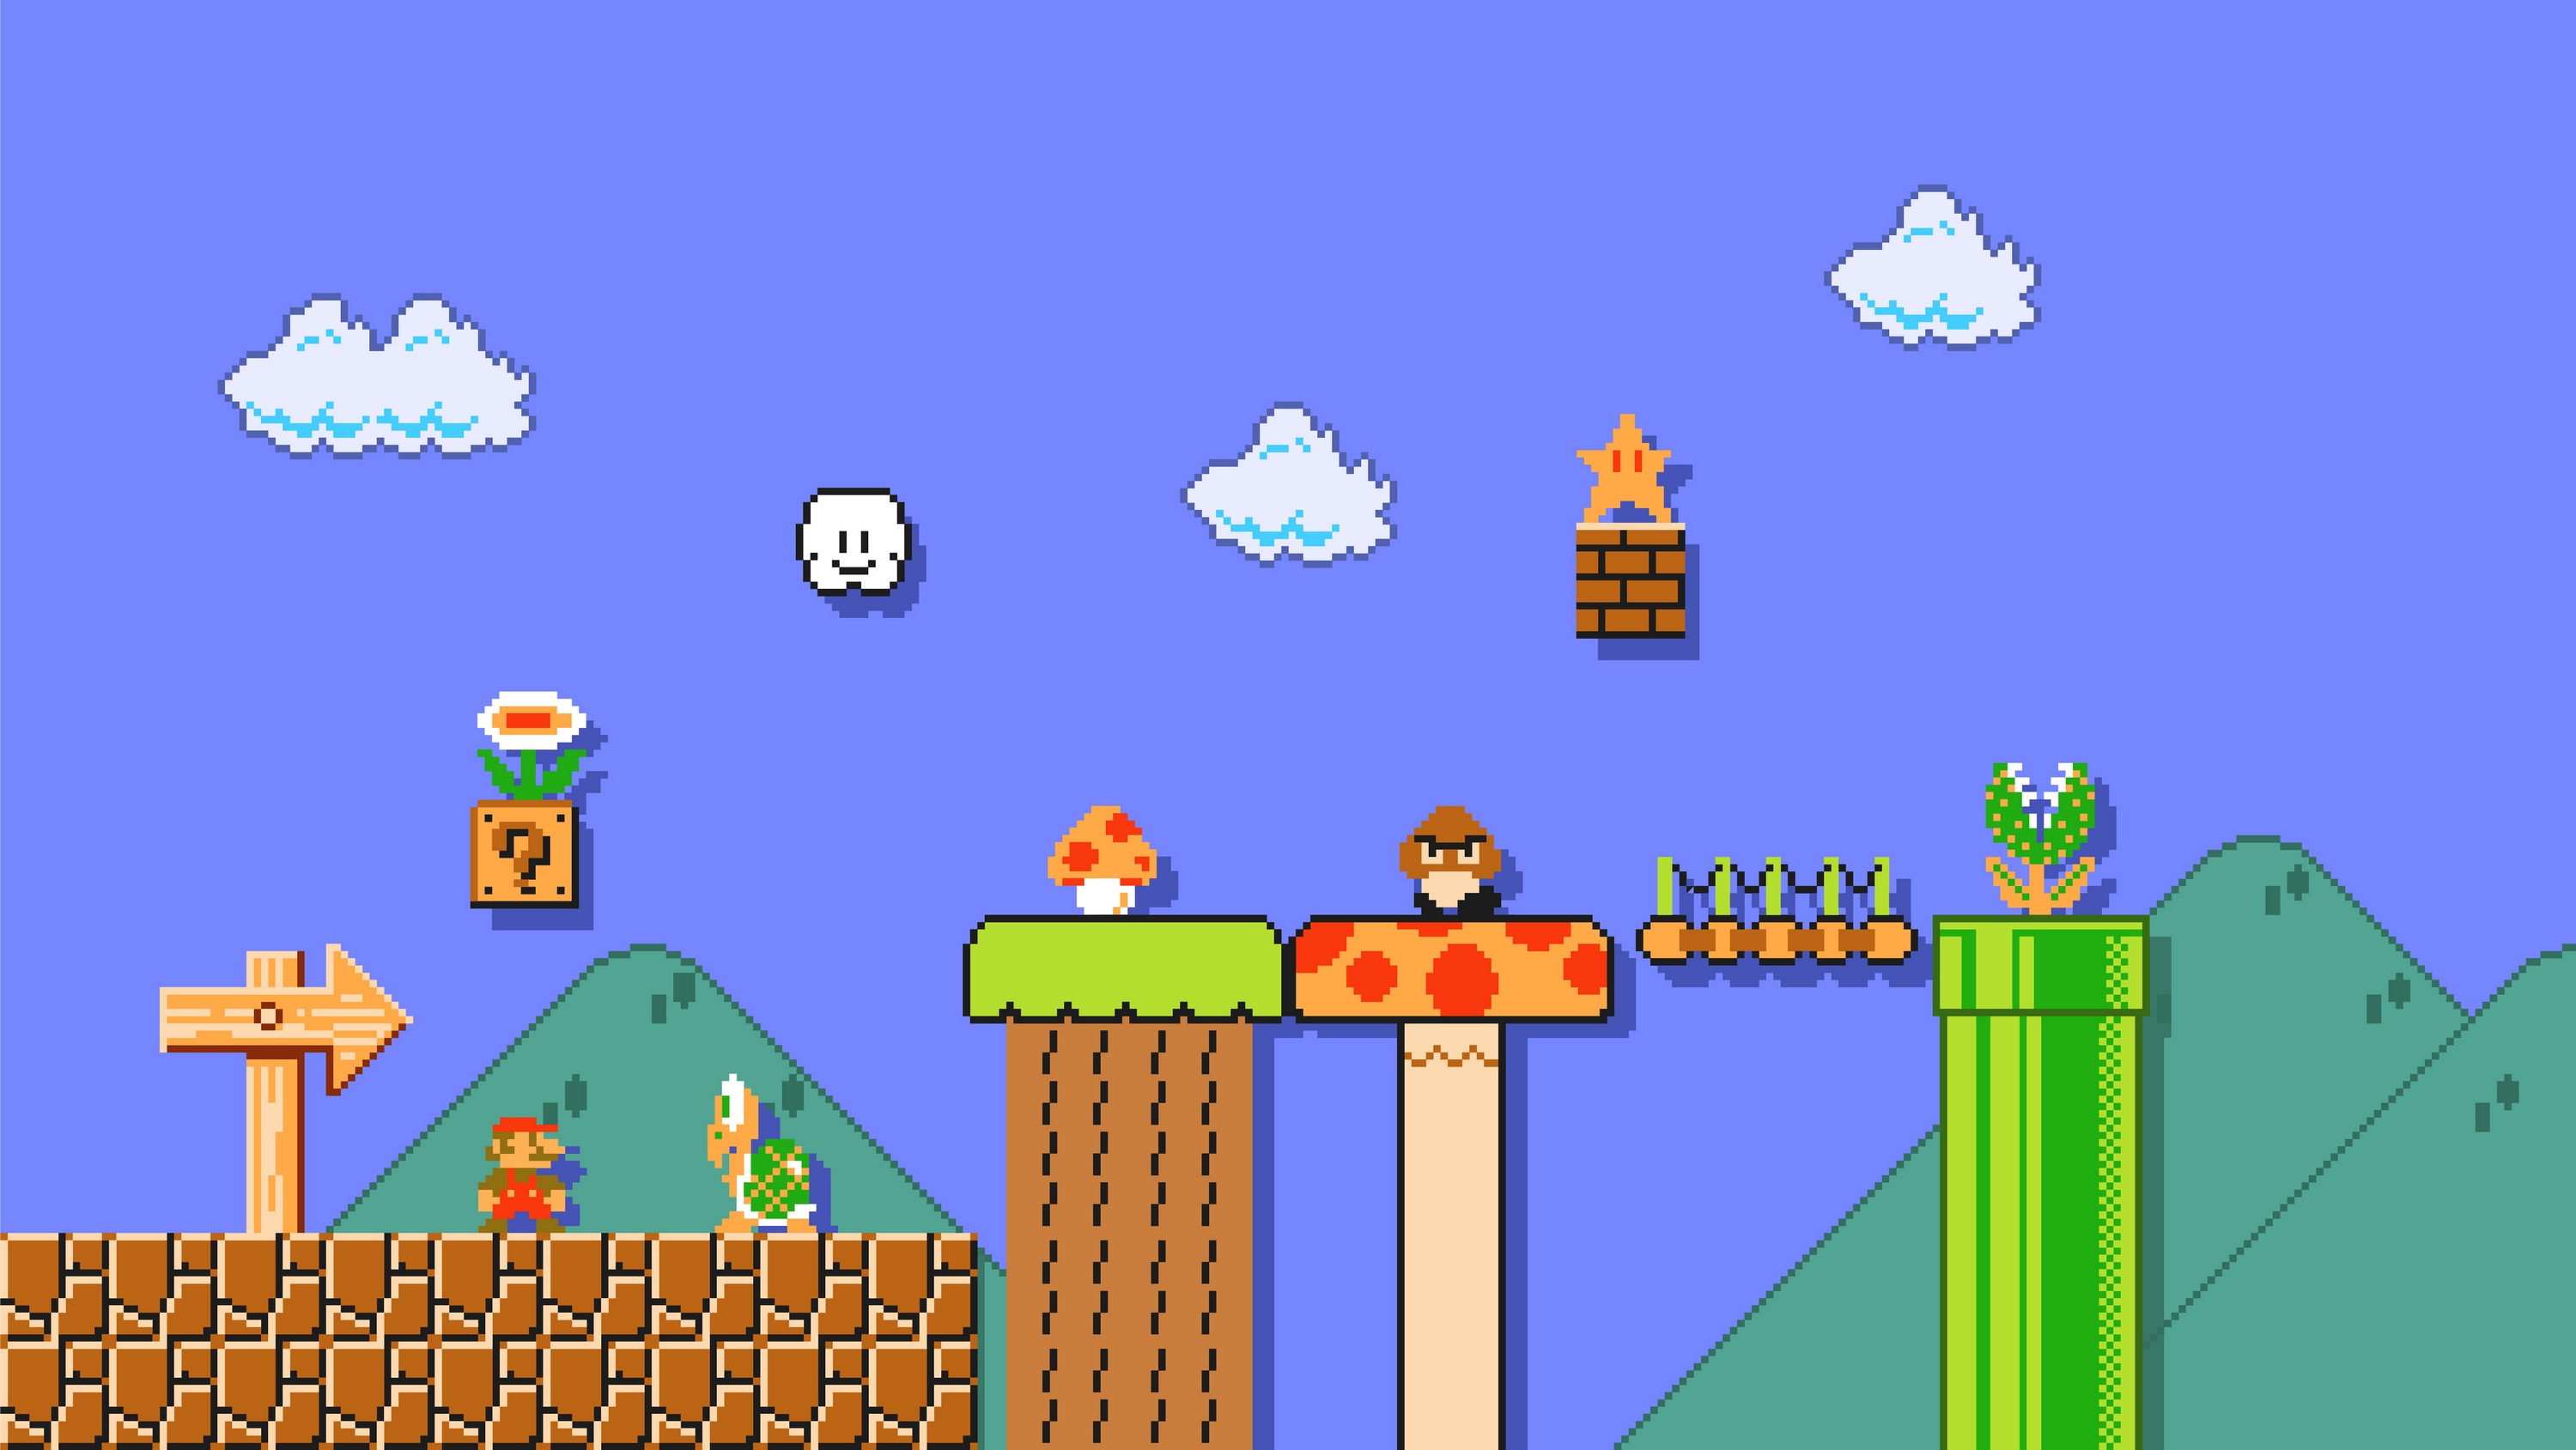 Une représentation stylisée de Super Mario Bros, un classique du jeu vidéo sorti en 1985 au Japon. Super Mario Bros a fait le succès de la console NES et révélé un artiste hors pair : Shigeru Miyamoto. © RoseStudio, Adobe Stock